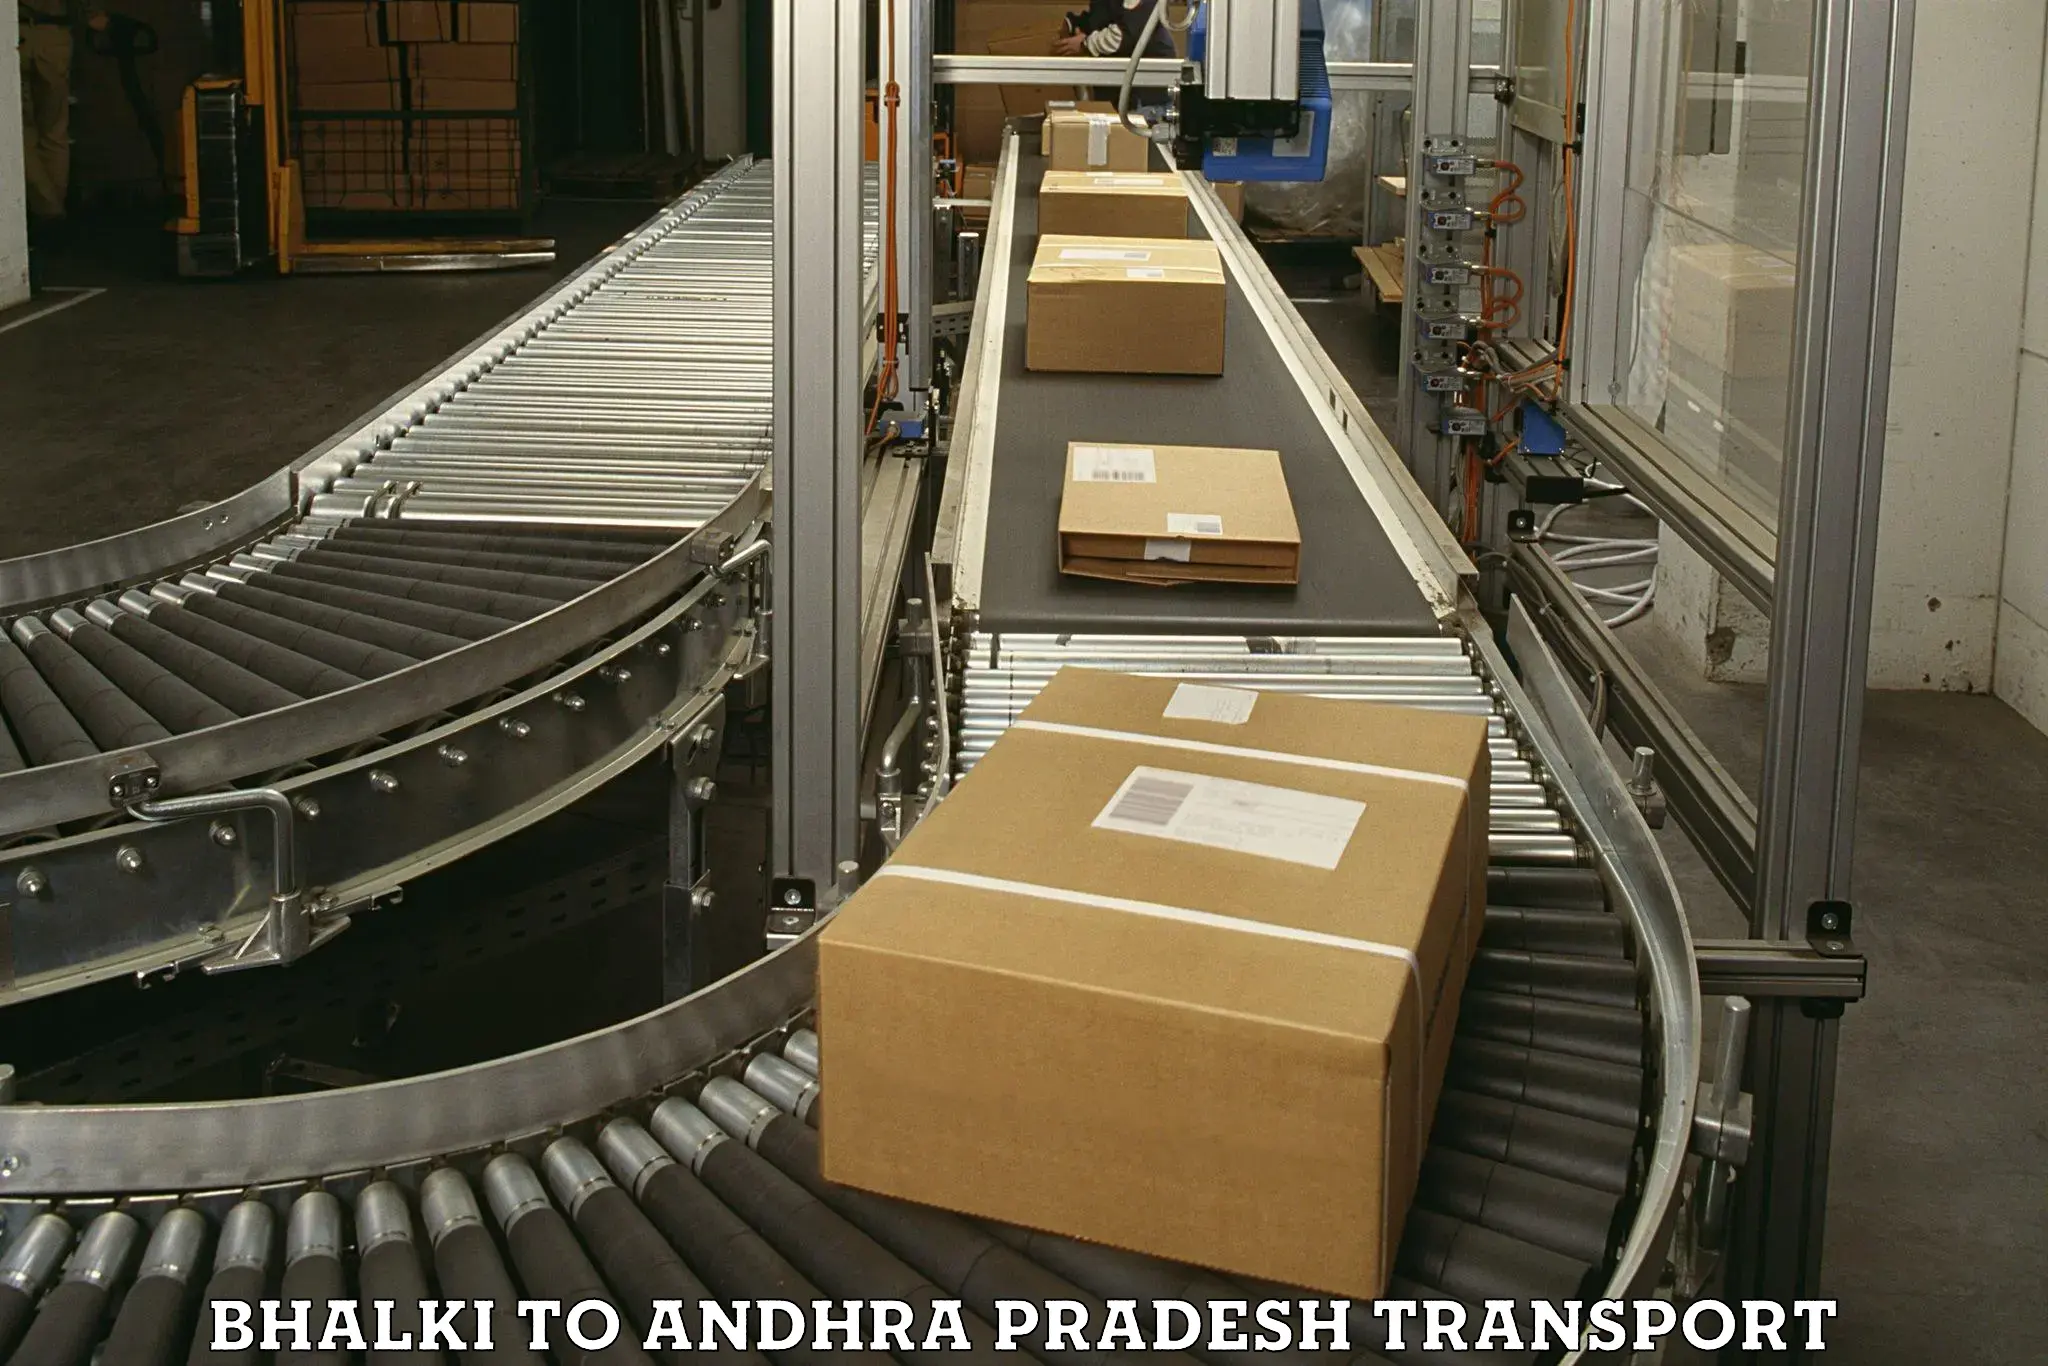 Shipping partner Bhalki to Andhra Pradesh